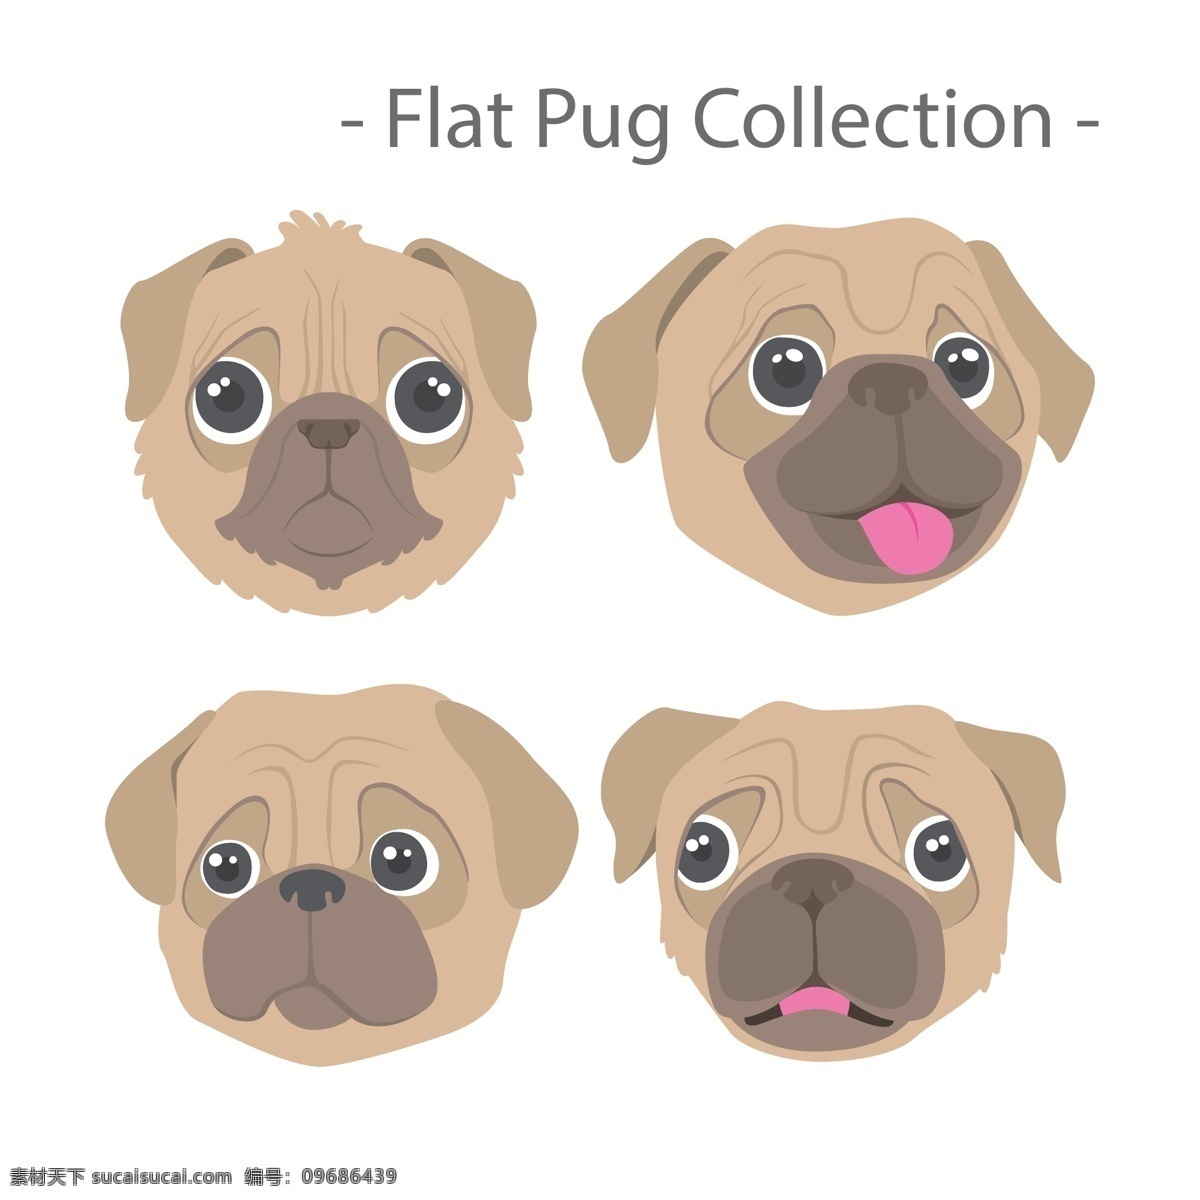 表情 插画 柴犬 动物 搞笑 狗 节日 卡通狗 可爱 可爱宠物 犬 生肖 手绘 的卡 通